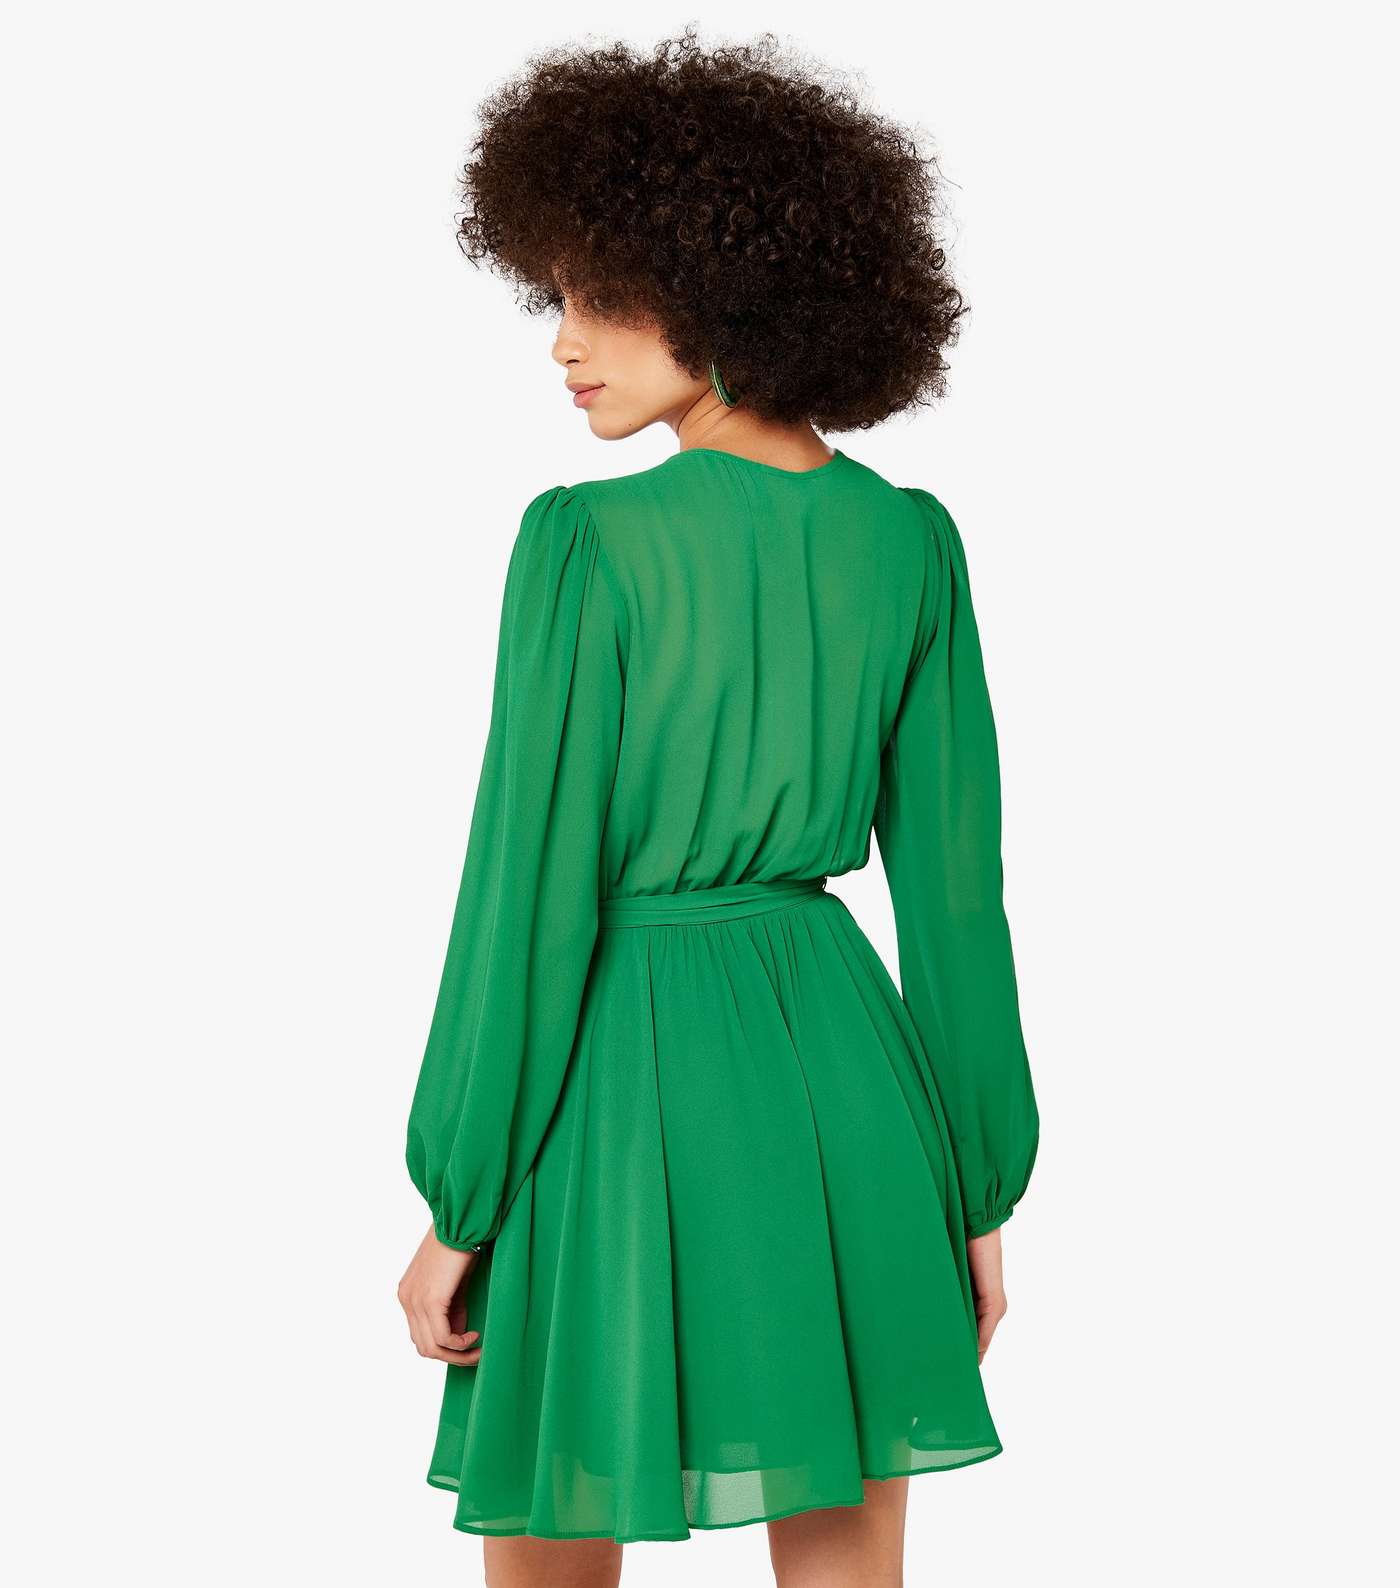 Apricot Green Chiffon Mini Wrap Dress Image 3